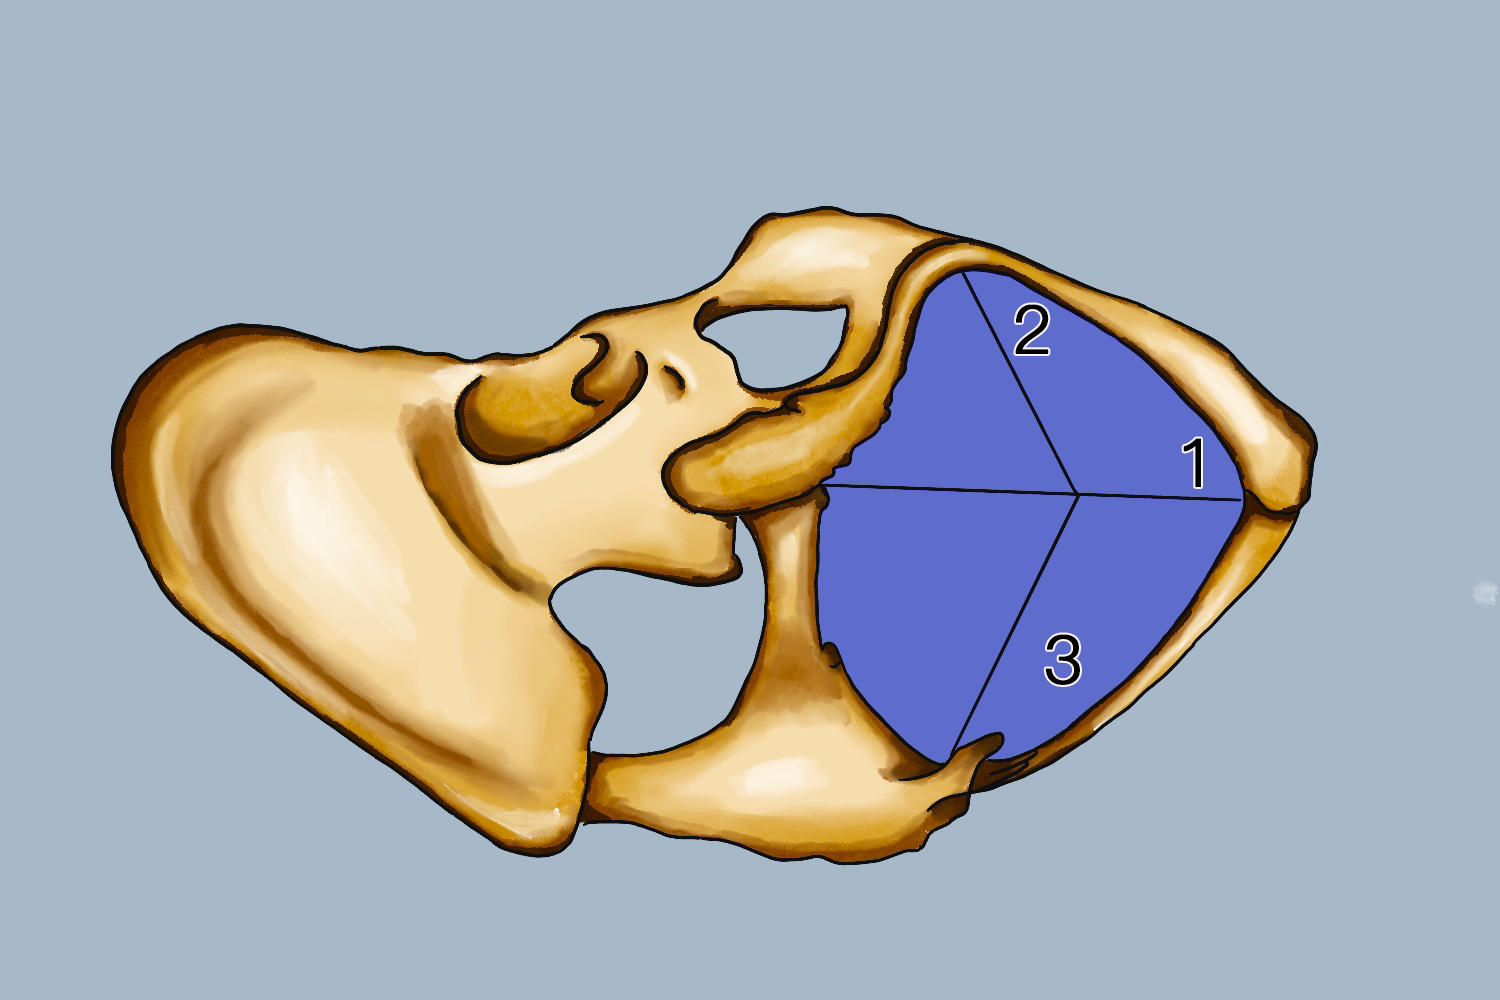 骨盆出口平面图及径线图片